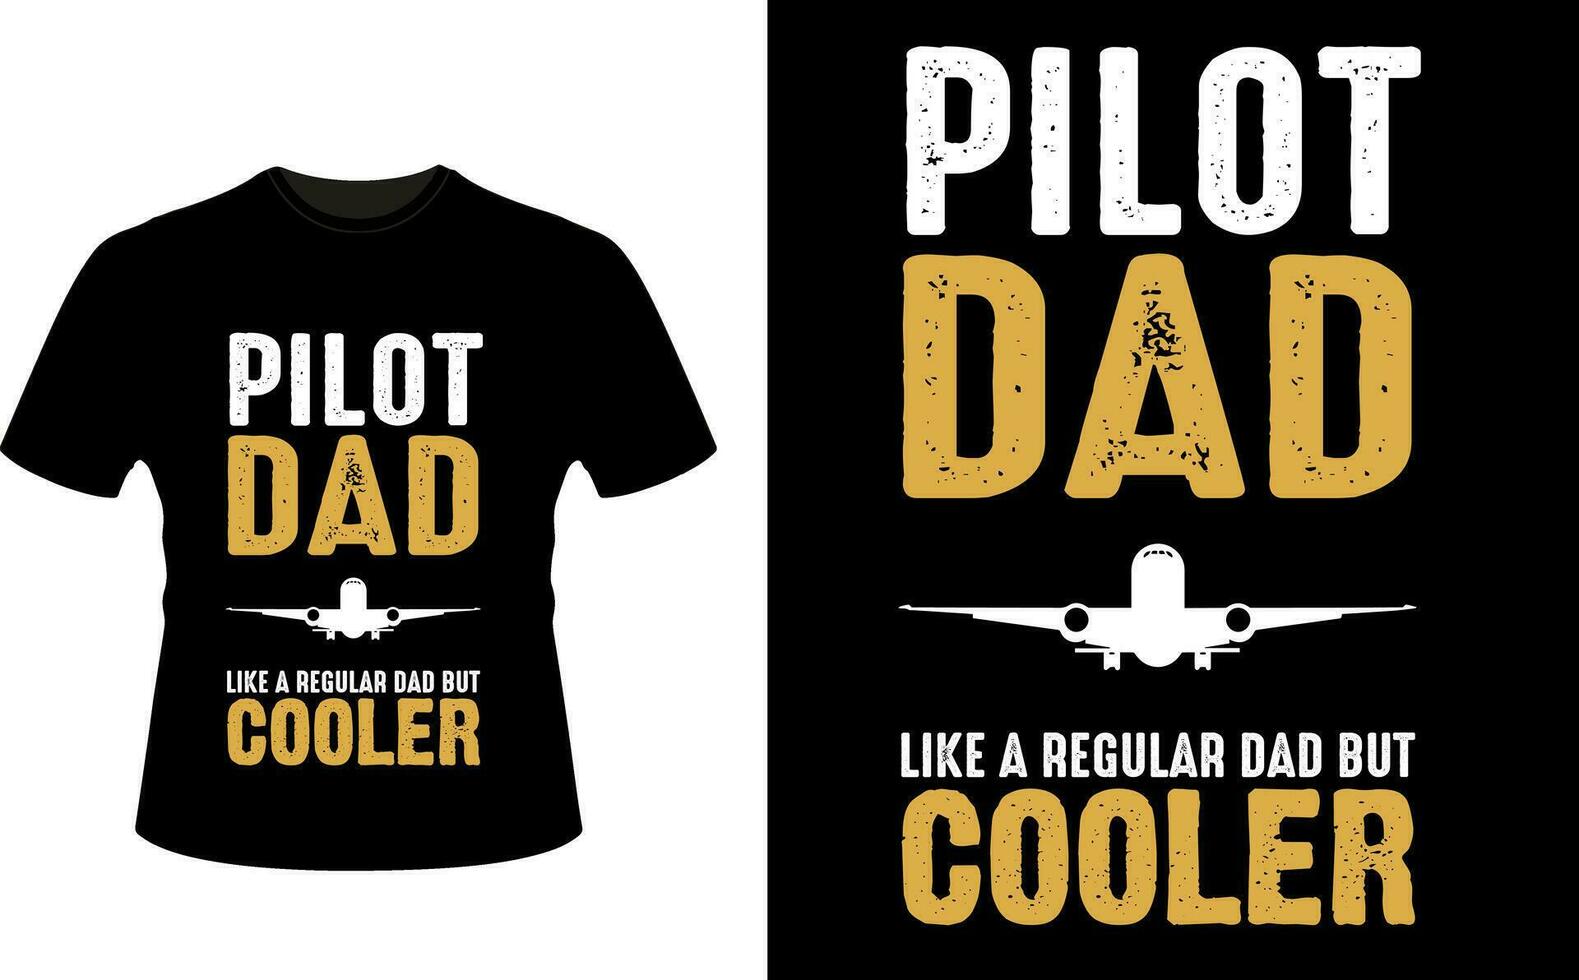 piloot vader Leuk vinden een regelmatig vader maar koeler of vader papa t-shirt ontwerp of vader dag t overhemd ontwerp vector